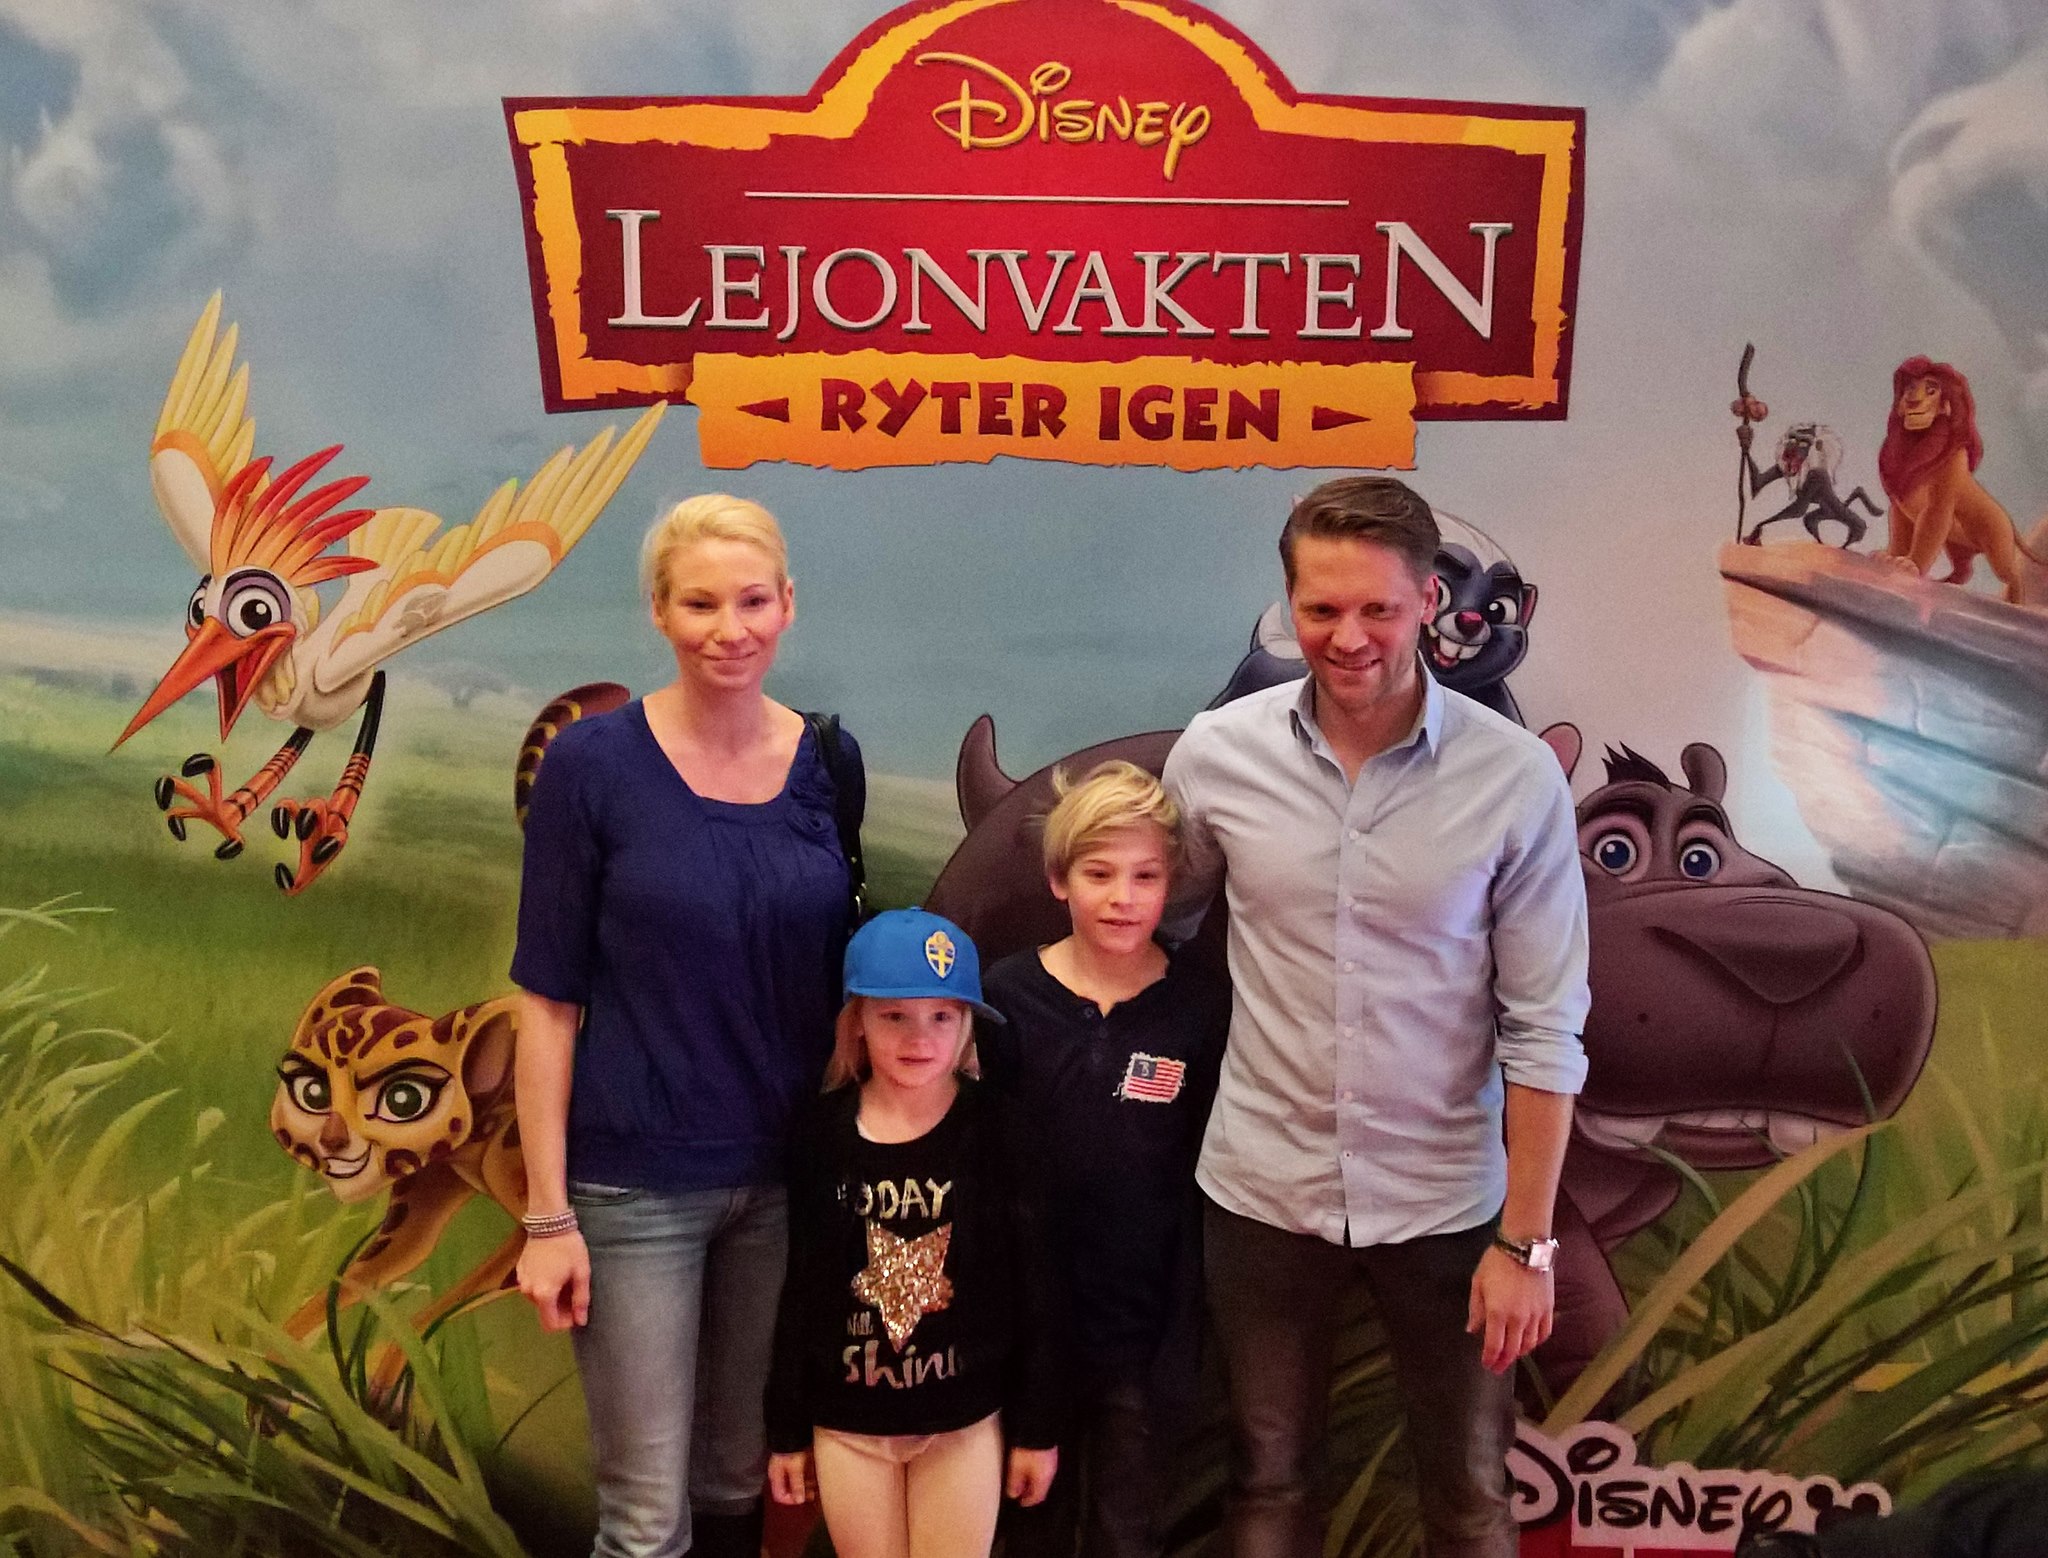 Wonderland & Disney junior höll i premiären av Lejonvakten